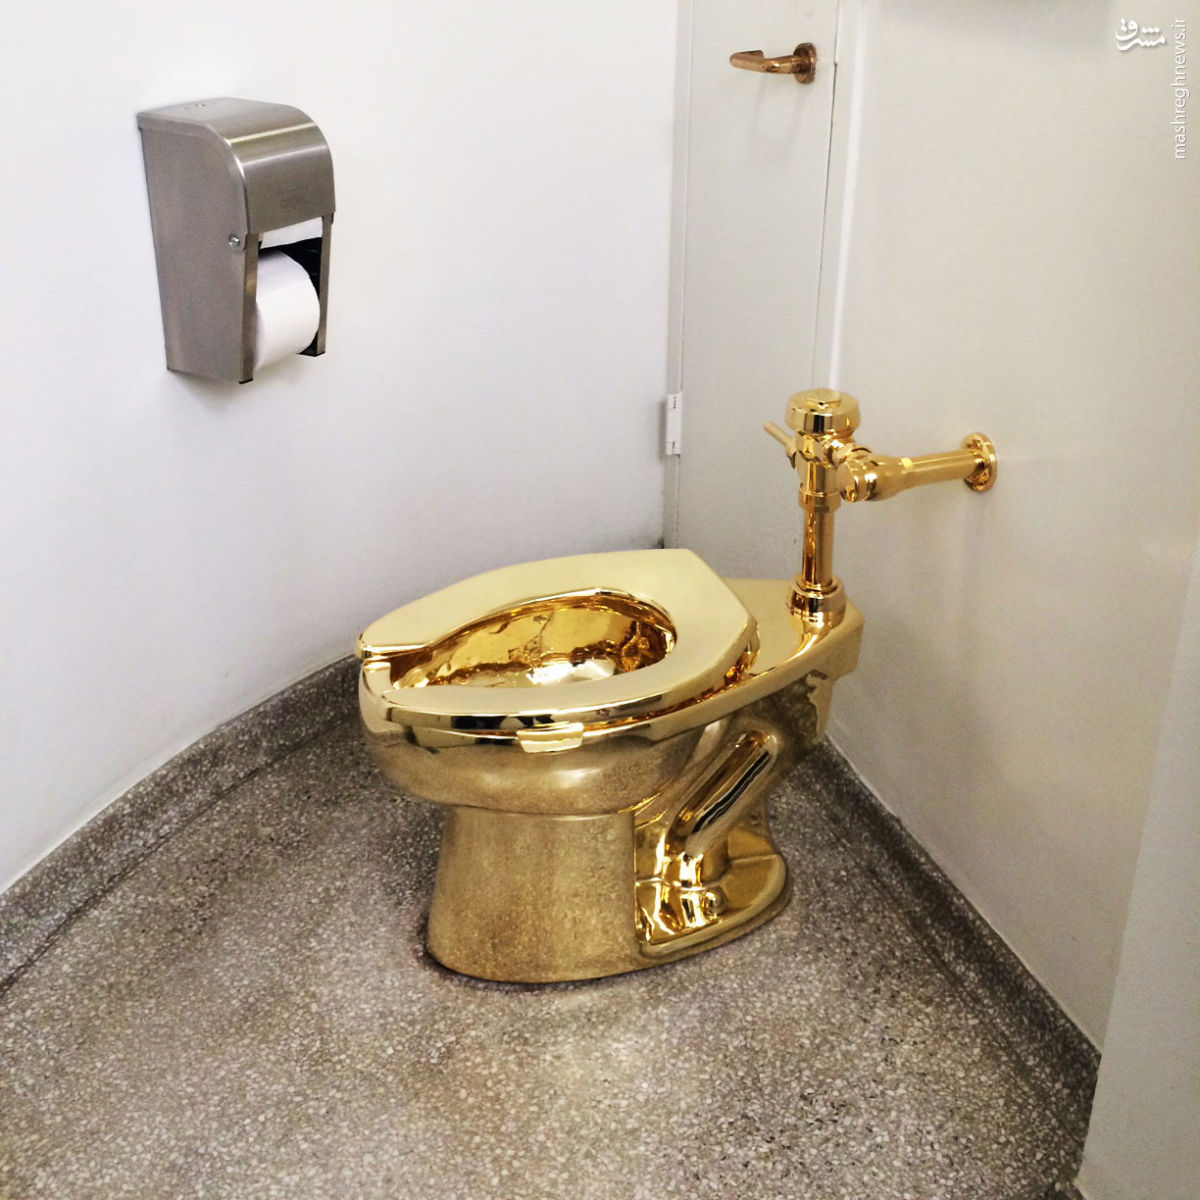 عکس/ توالتی به نام آمریکا